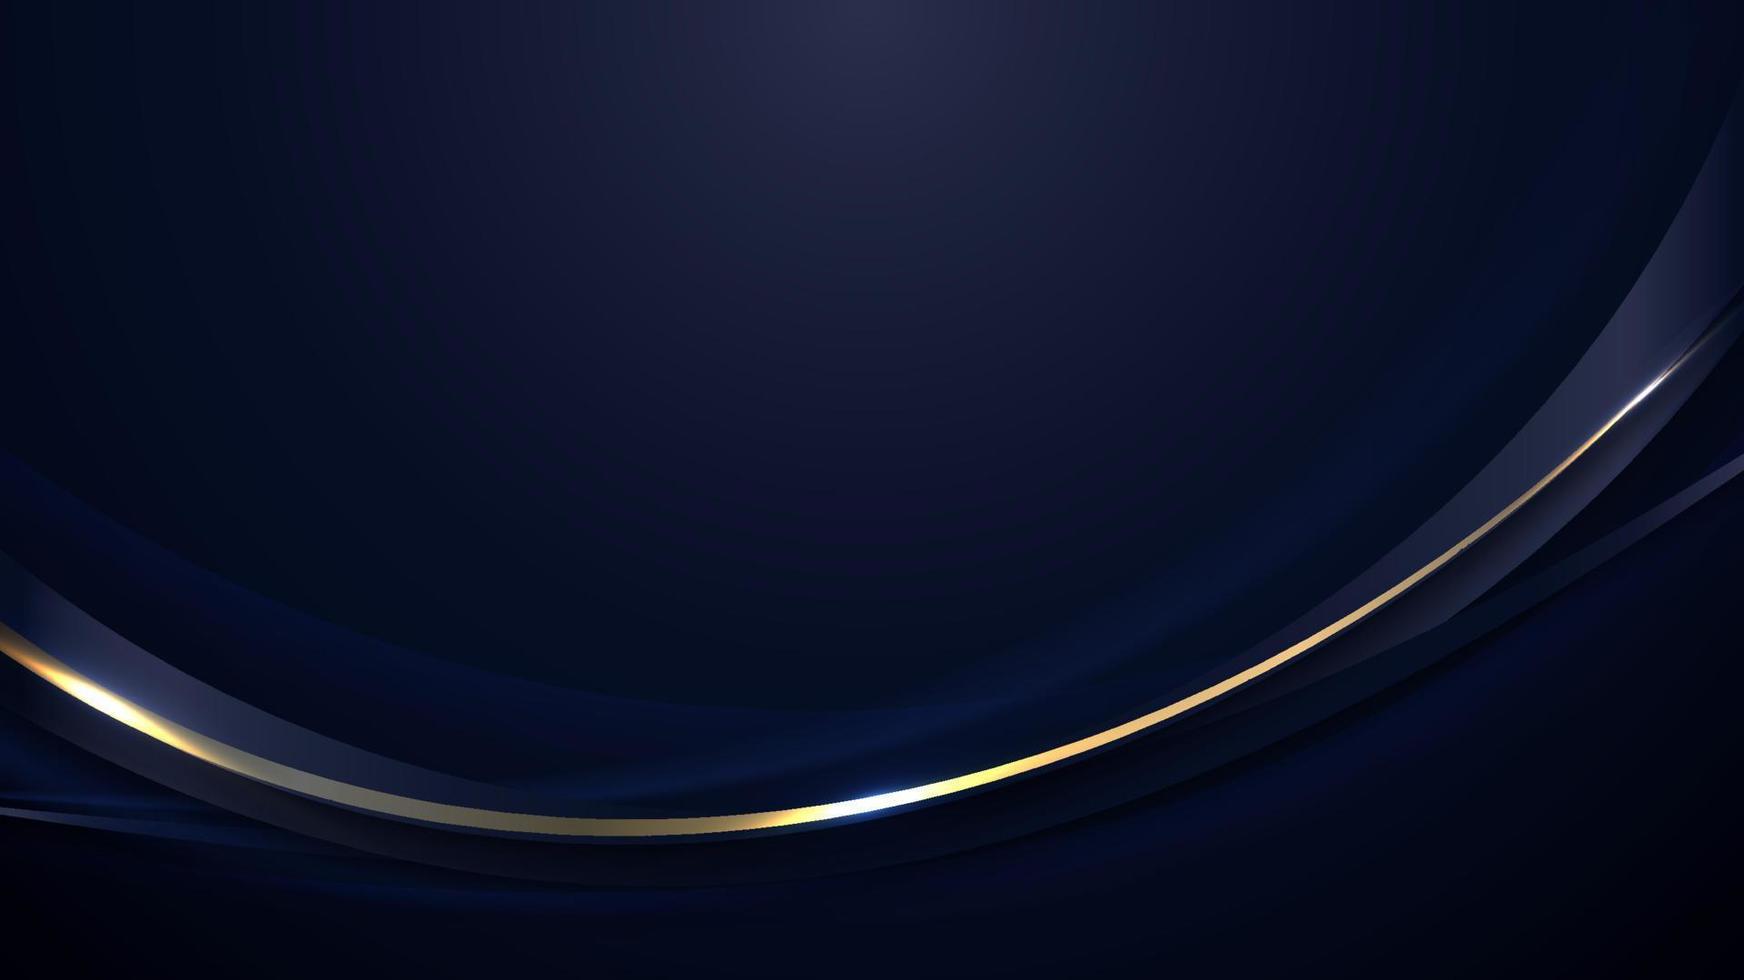 bannière web modèle abstrait lignes courbes bleues et dorées chevauchant la conception de couches sur fond bleu foncé vecteur